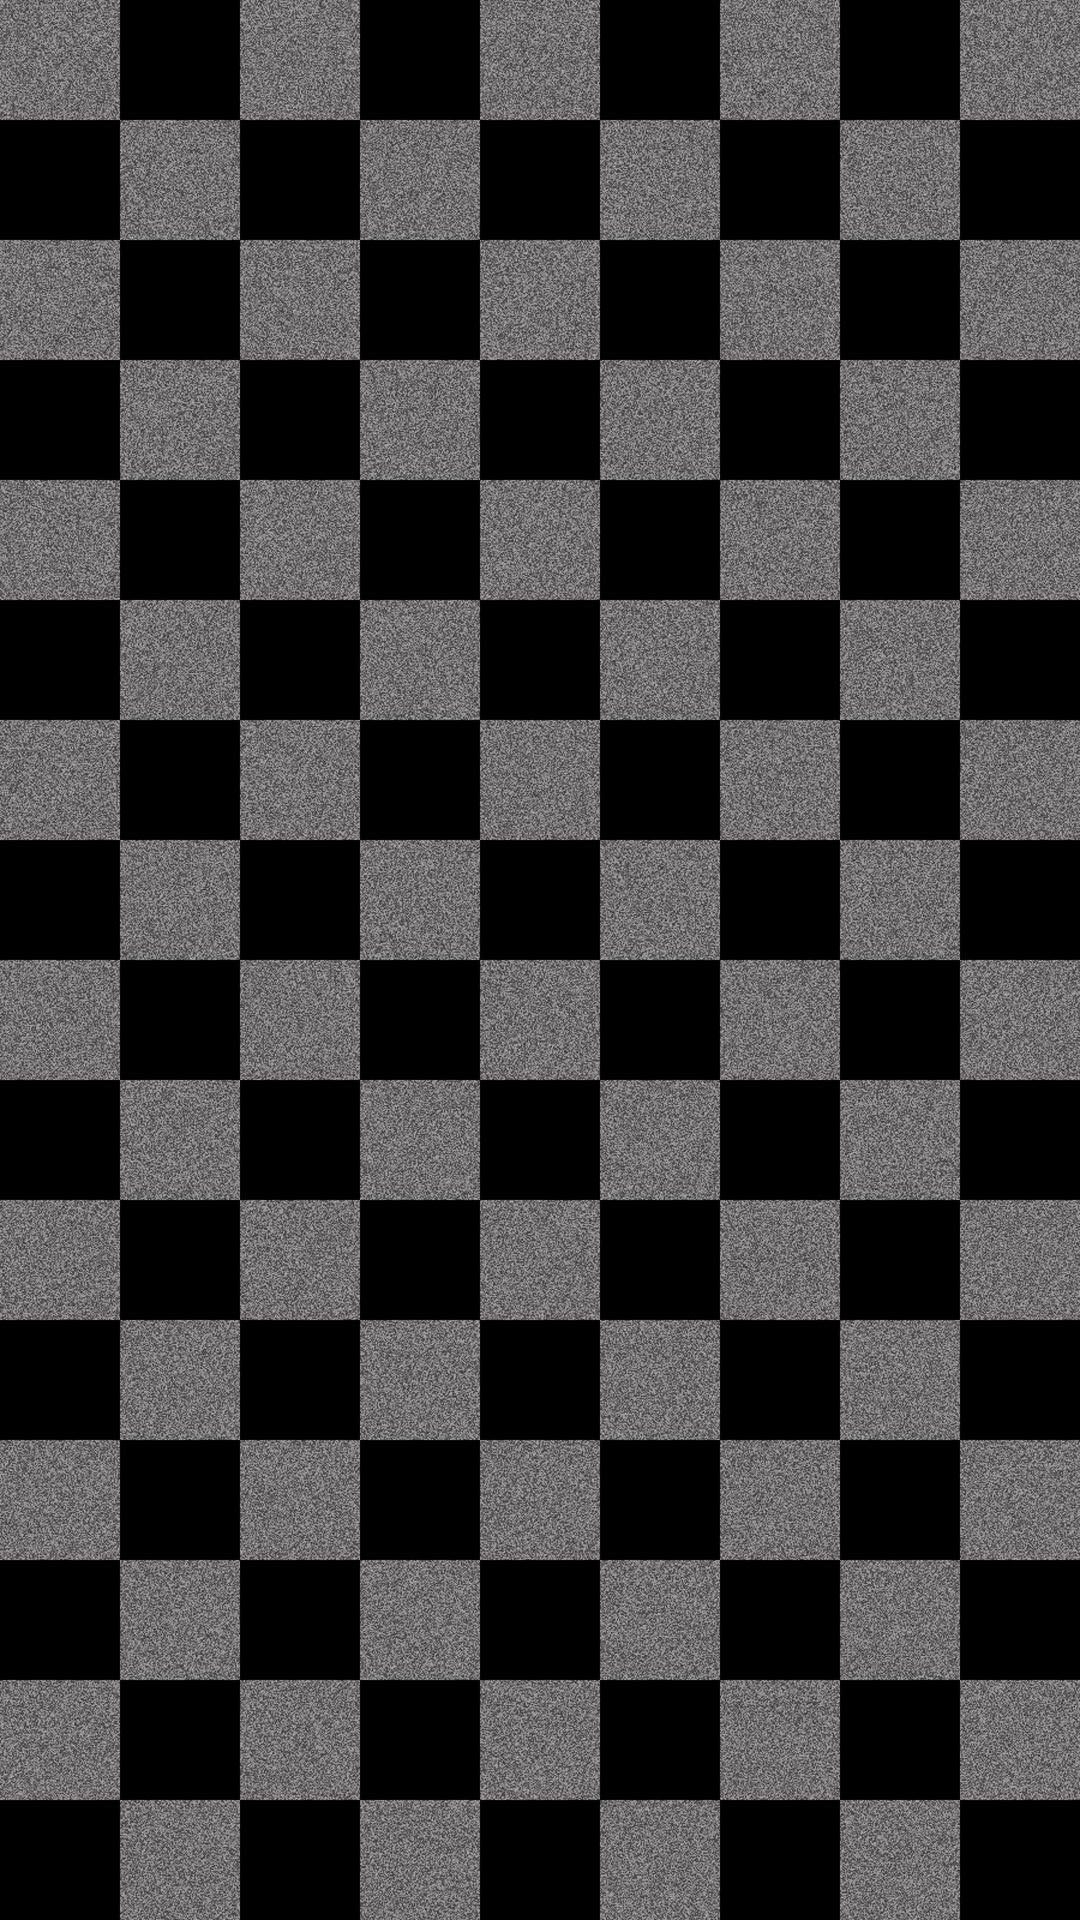 Tổng hợp 50 hình nền kẻ sọc trắng đen đơn giản nhưng đầy ấn tượng